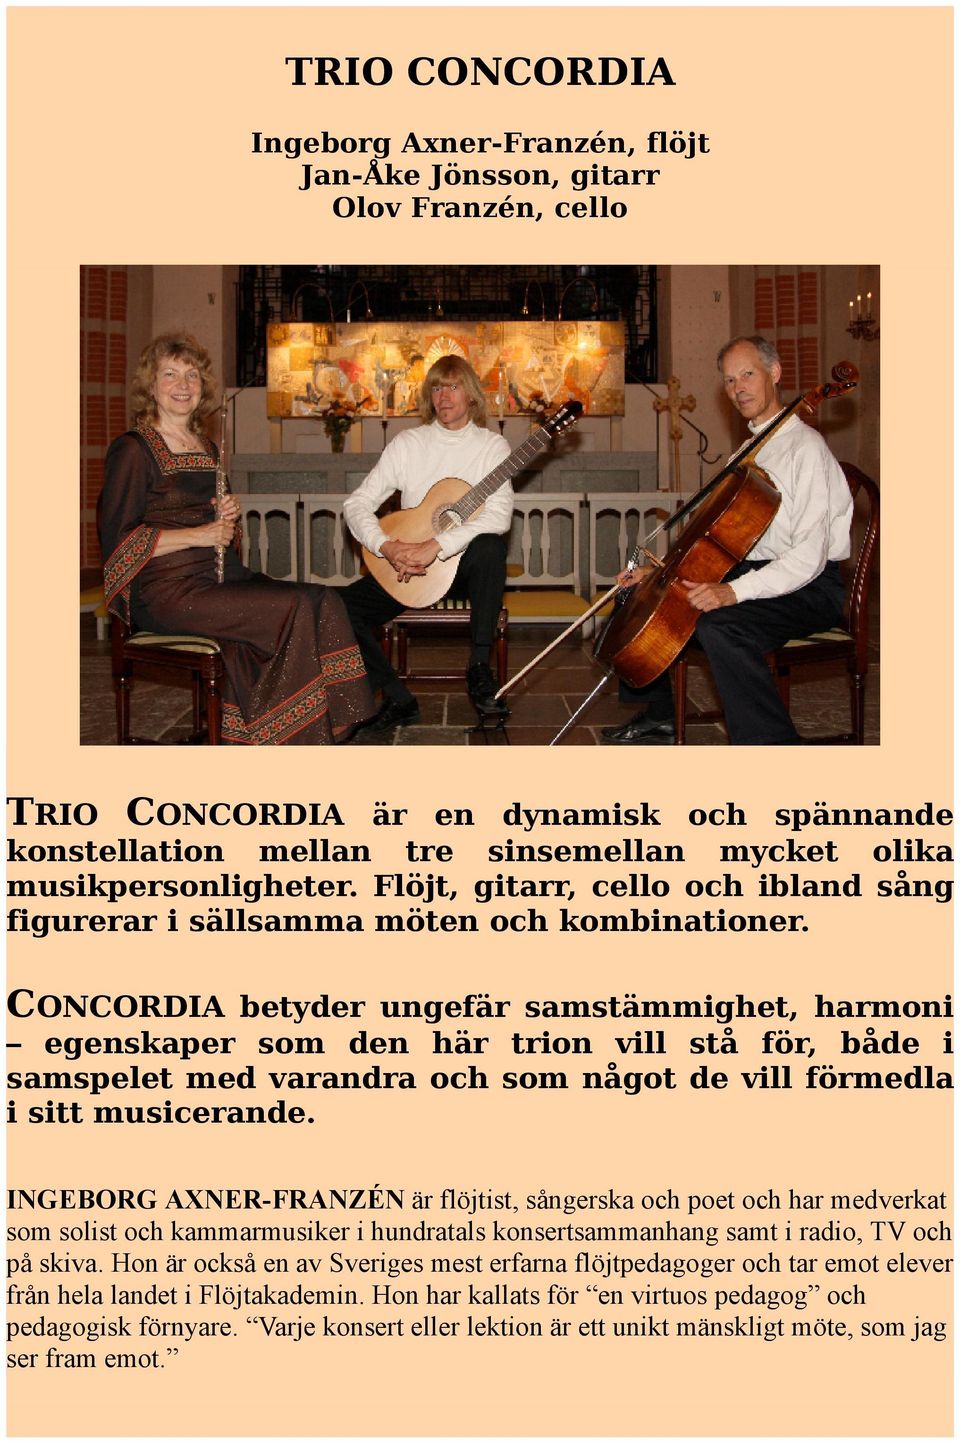 CONCORDIA betyder ungefär samstämmighet, harmoni egenskaper som den här trion vill stå för, både i samspelet med varandra och som något de vill förmedla i sitt musicerande.